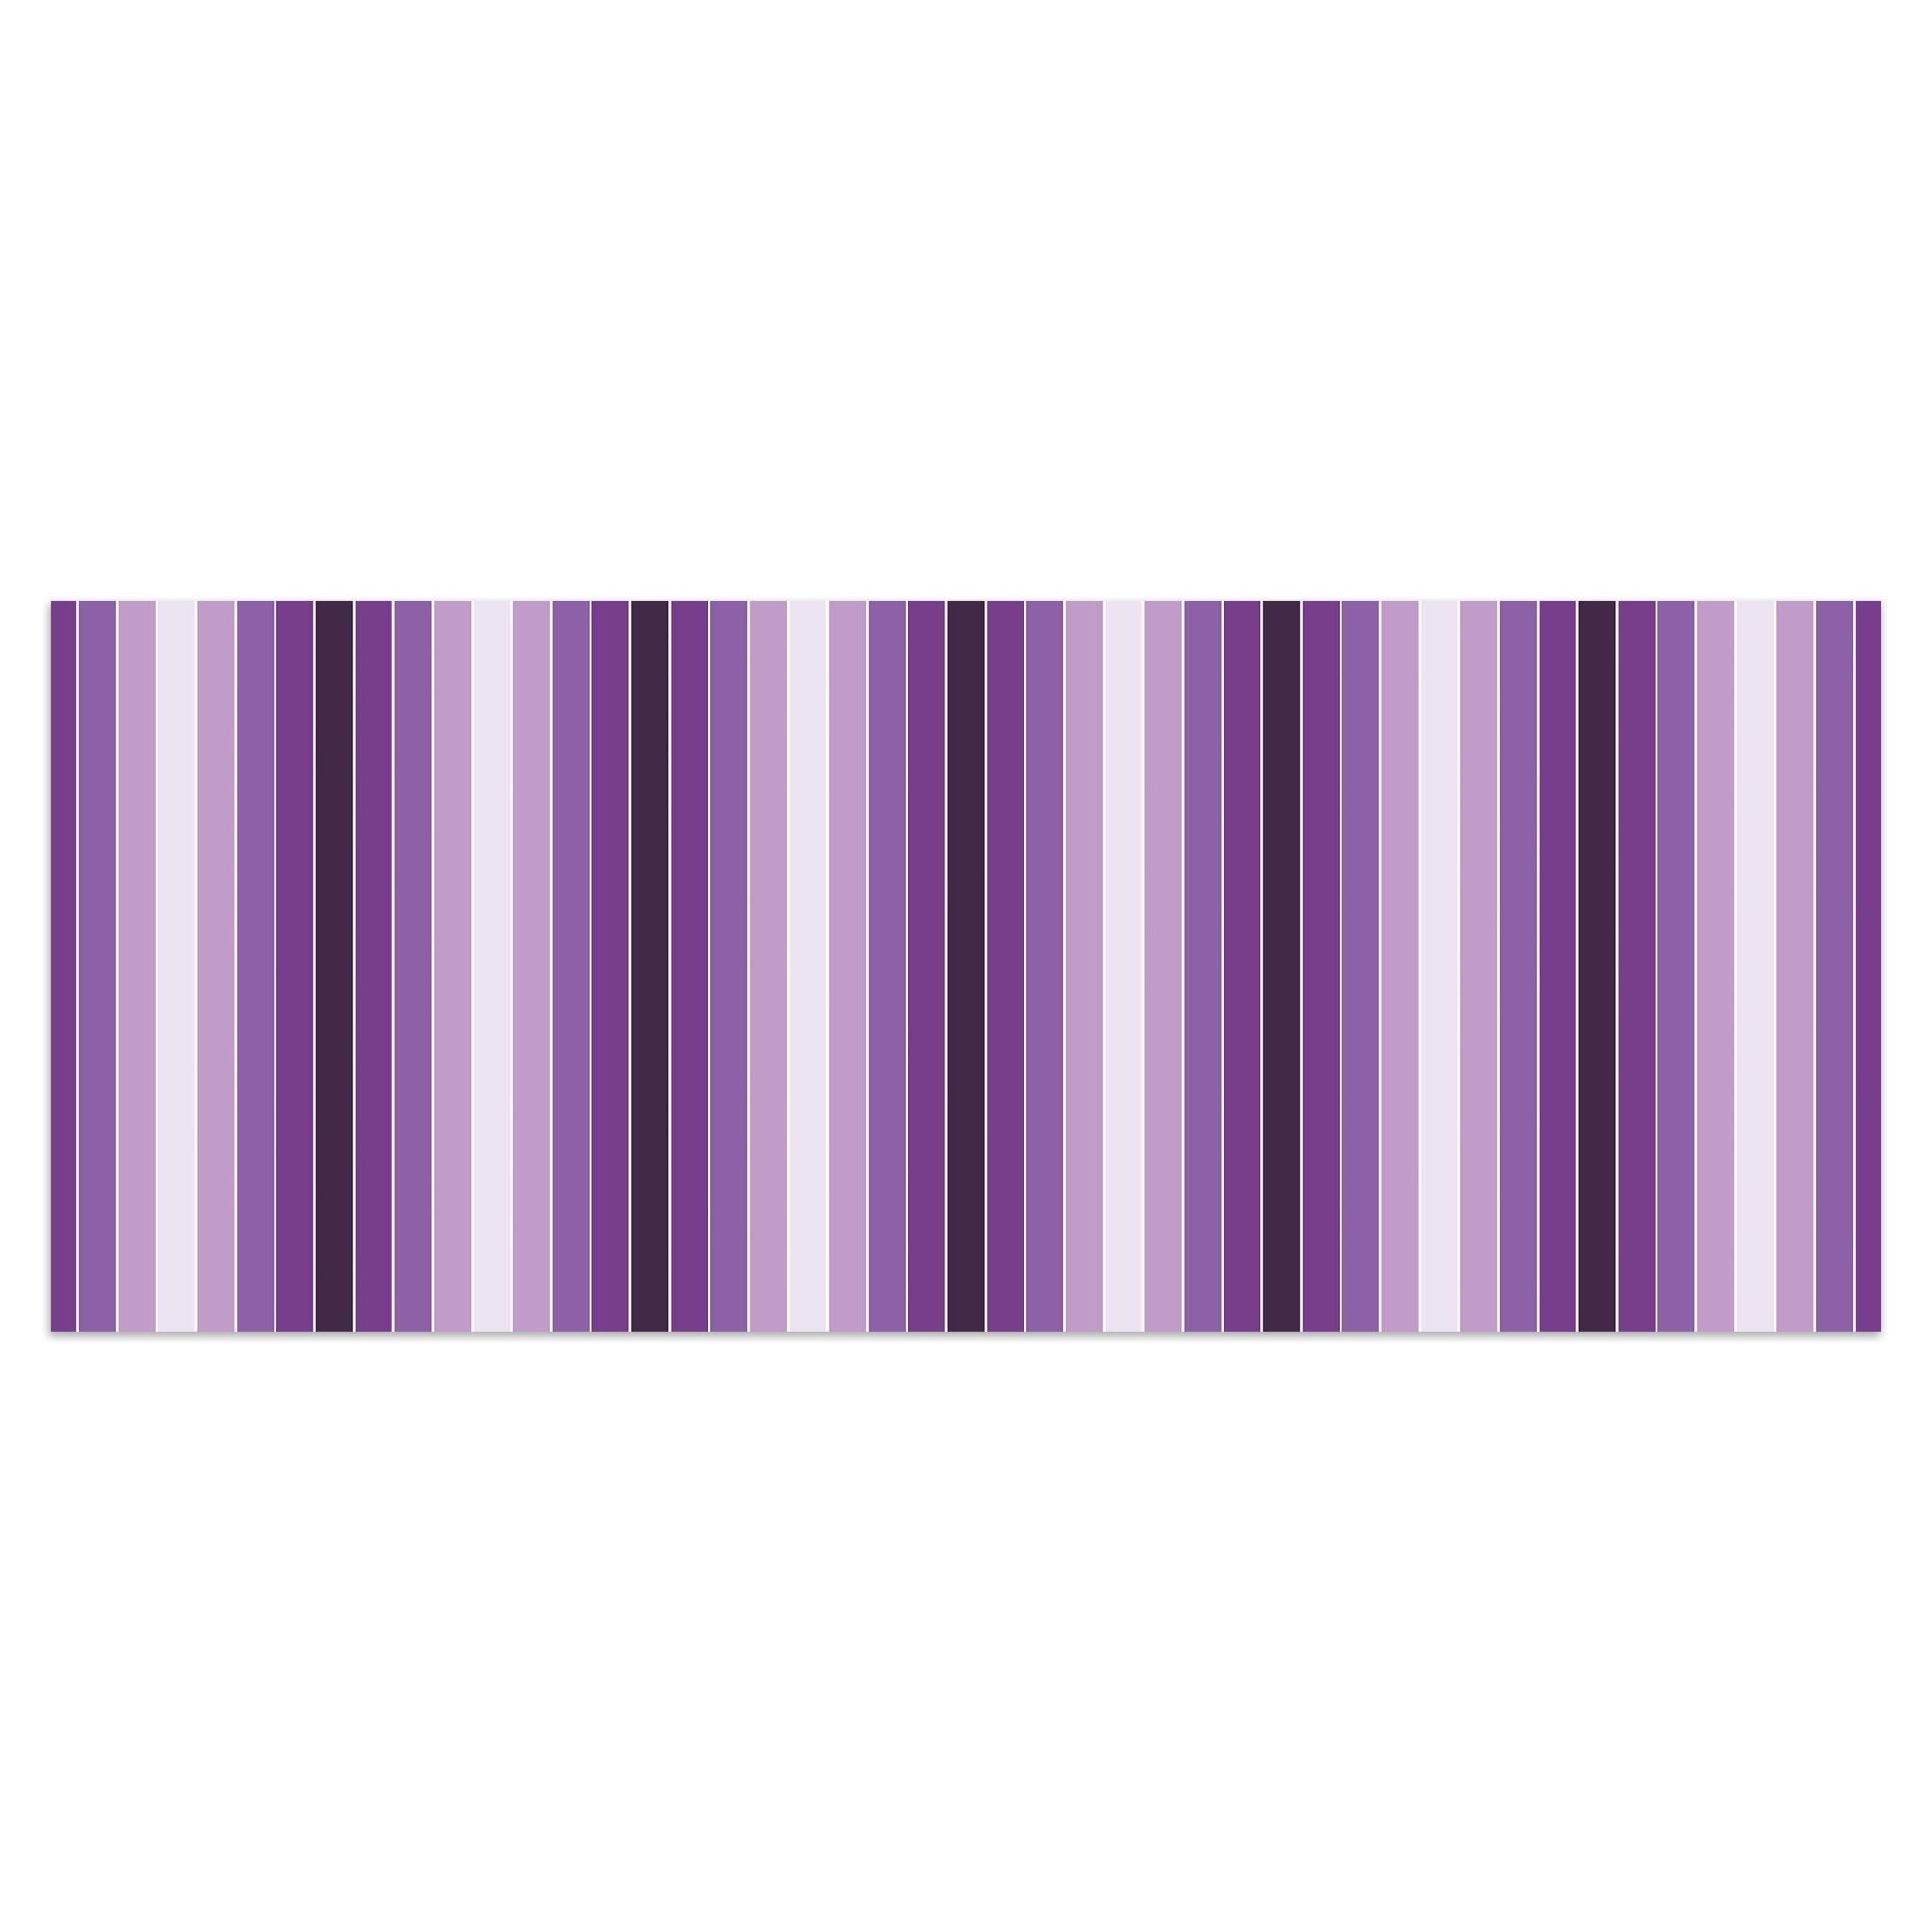 Leinwandbild Leuchtendes Violett Muster M0092 kaufen - Bild 1